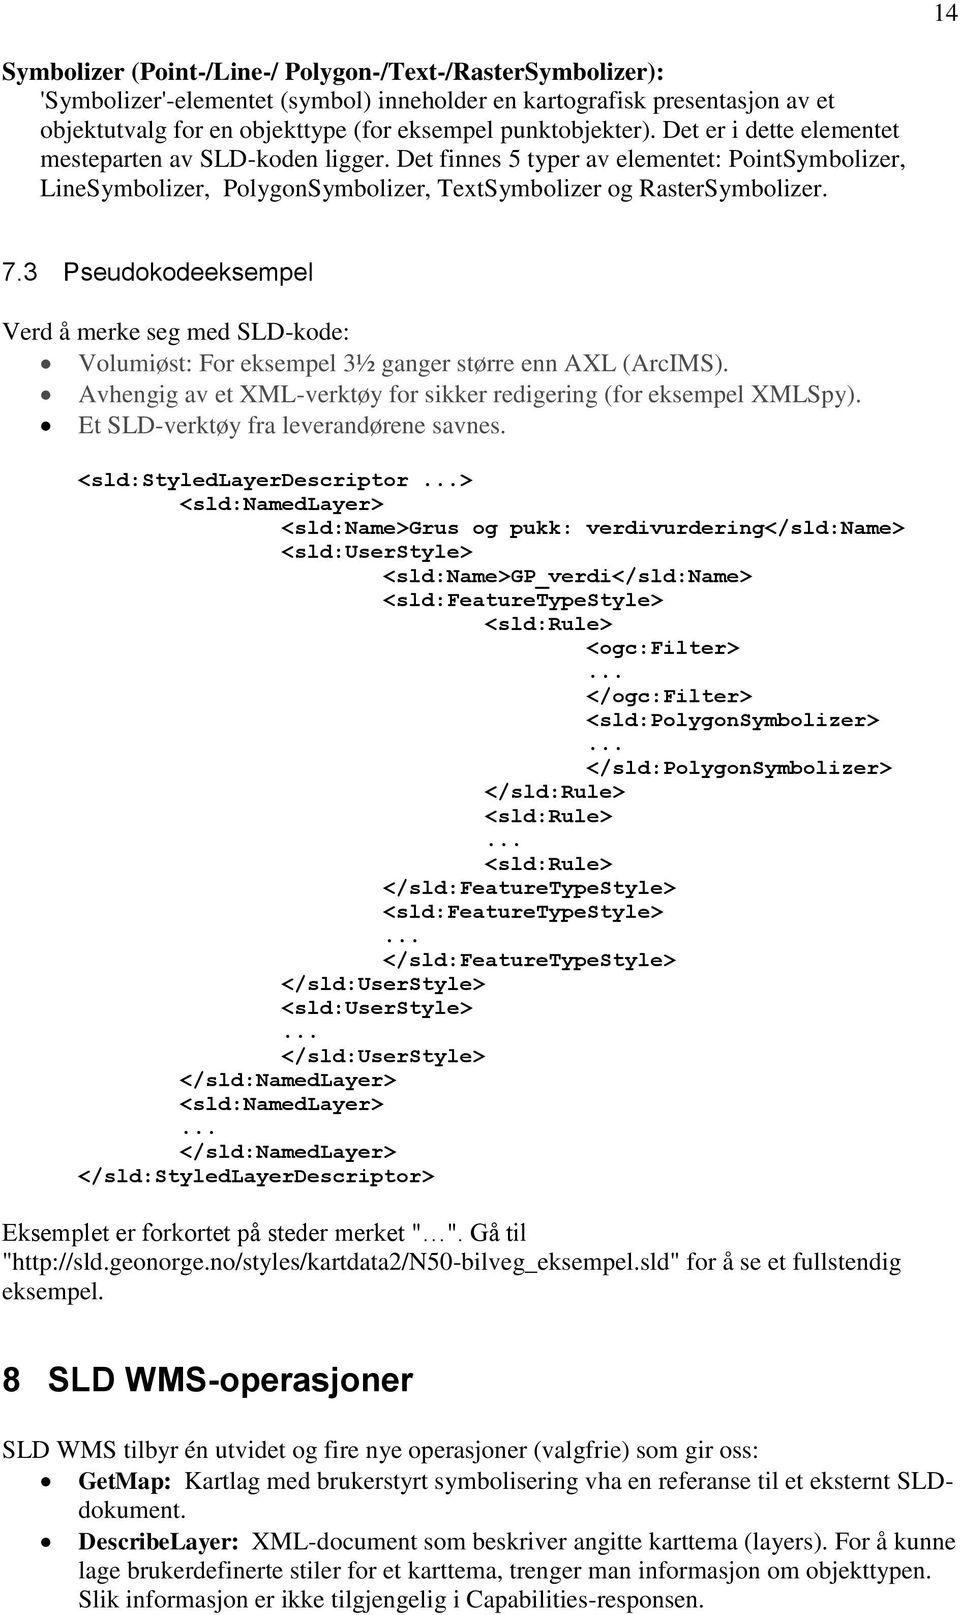 3 Pseudokodeeksempel Verd å merke seg med SLD-kode: Volumiøst: For eksempel 3½ ganger større enn AXL (ArcIMS). Avhengig av et XML-verktøy for sikker redigering (for eksempel XMLSpy).